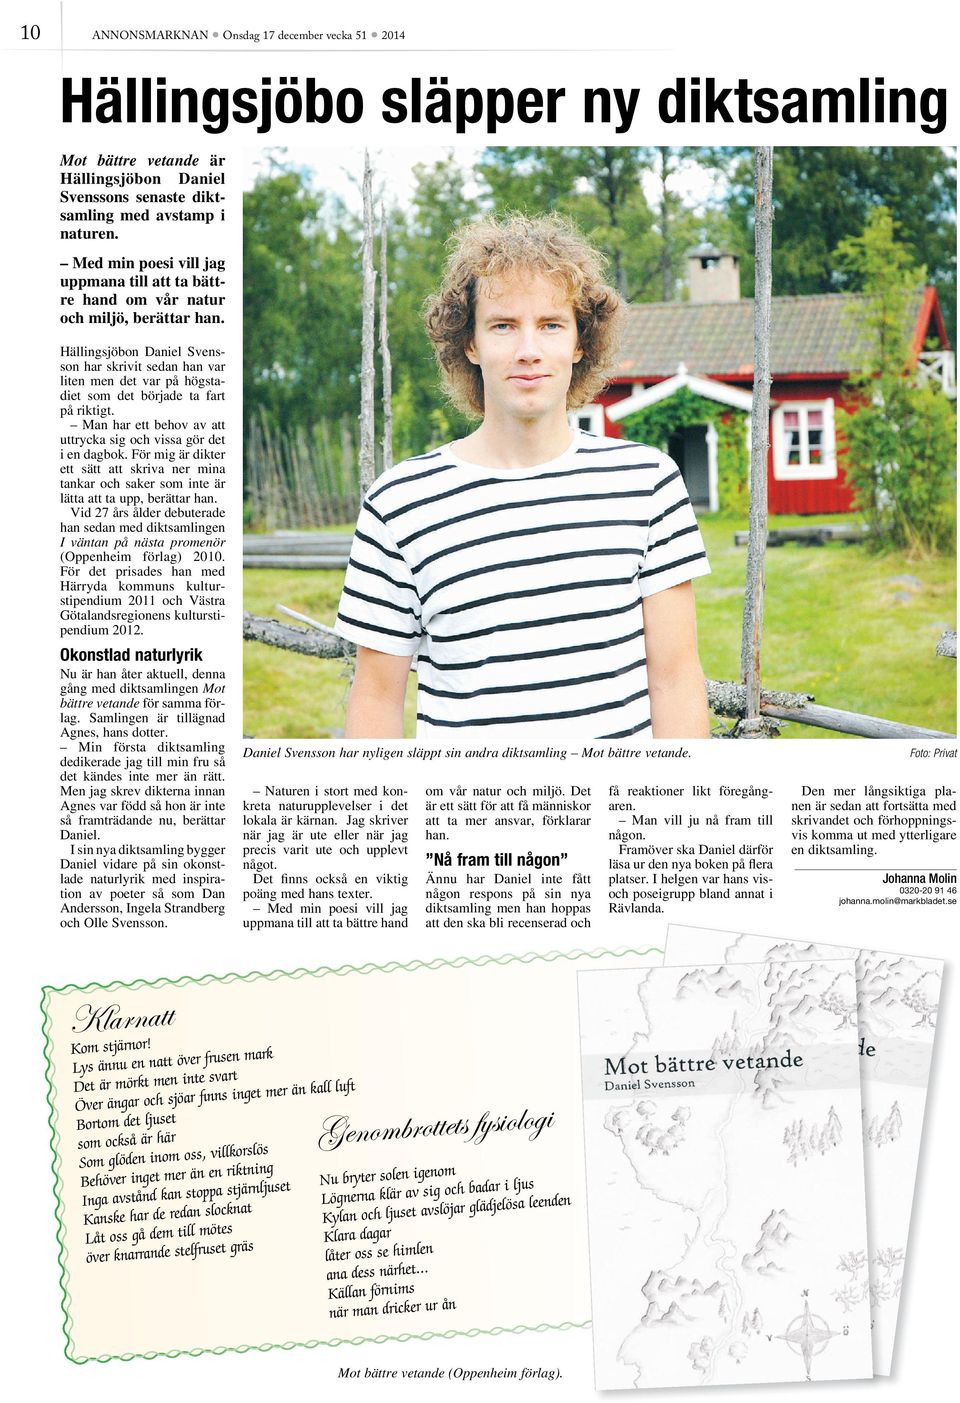 Hällingsjöbon Daniel Svensson har skrivit sedan han var liten men det var på högstadiet som det började ta fart på riktigt. Man har ett behov av att uttrycka sig vissa gör det i en dagbok.